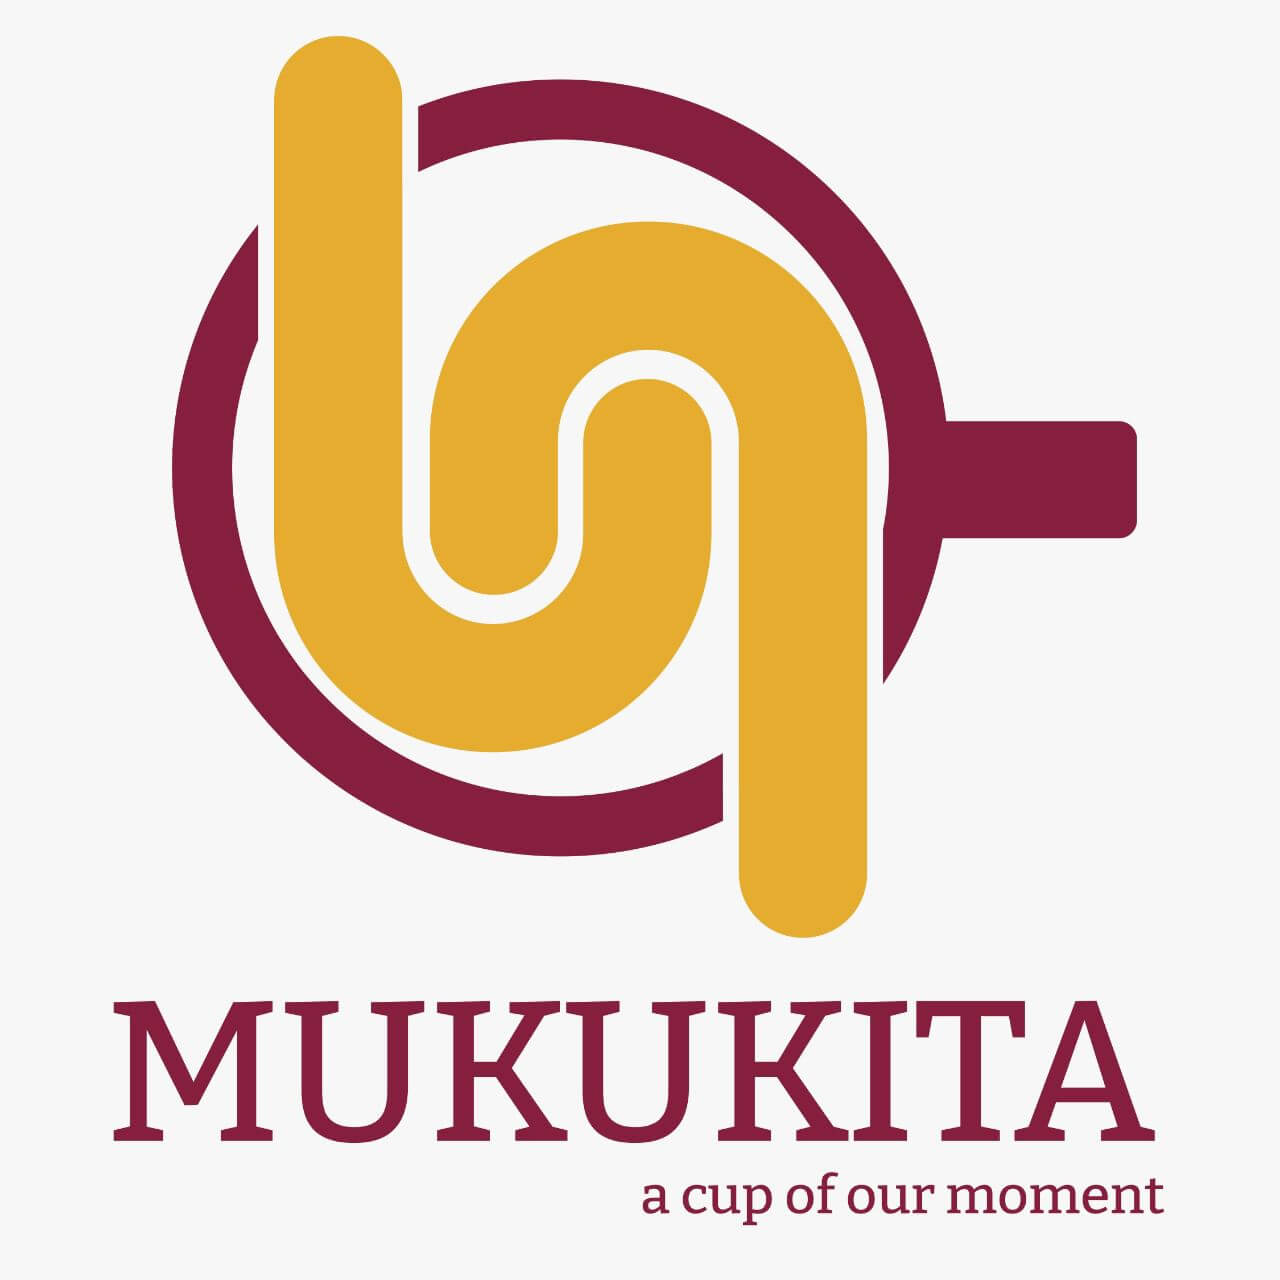 mukukita dot coffee site logo